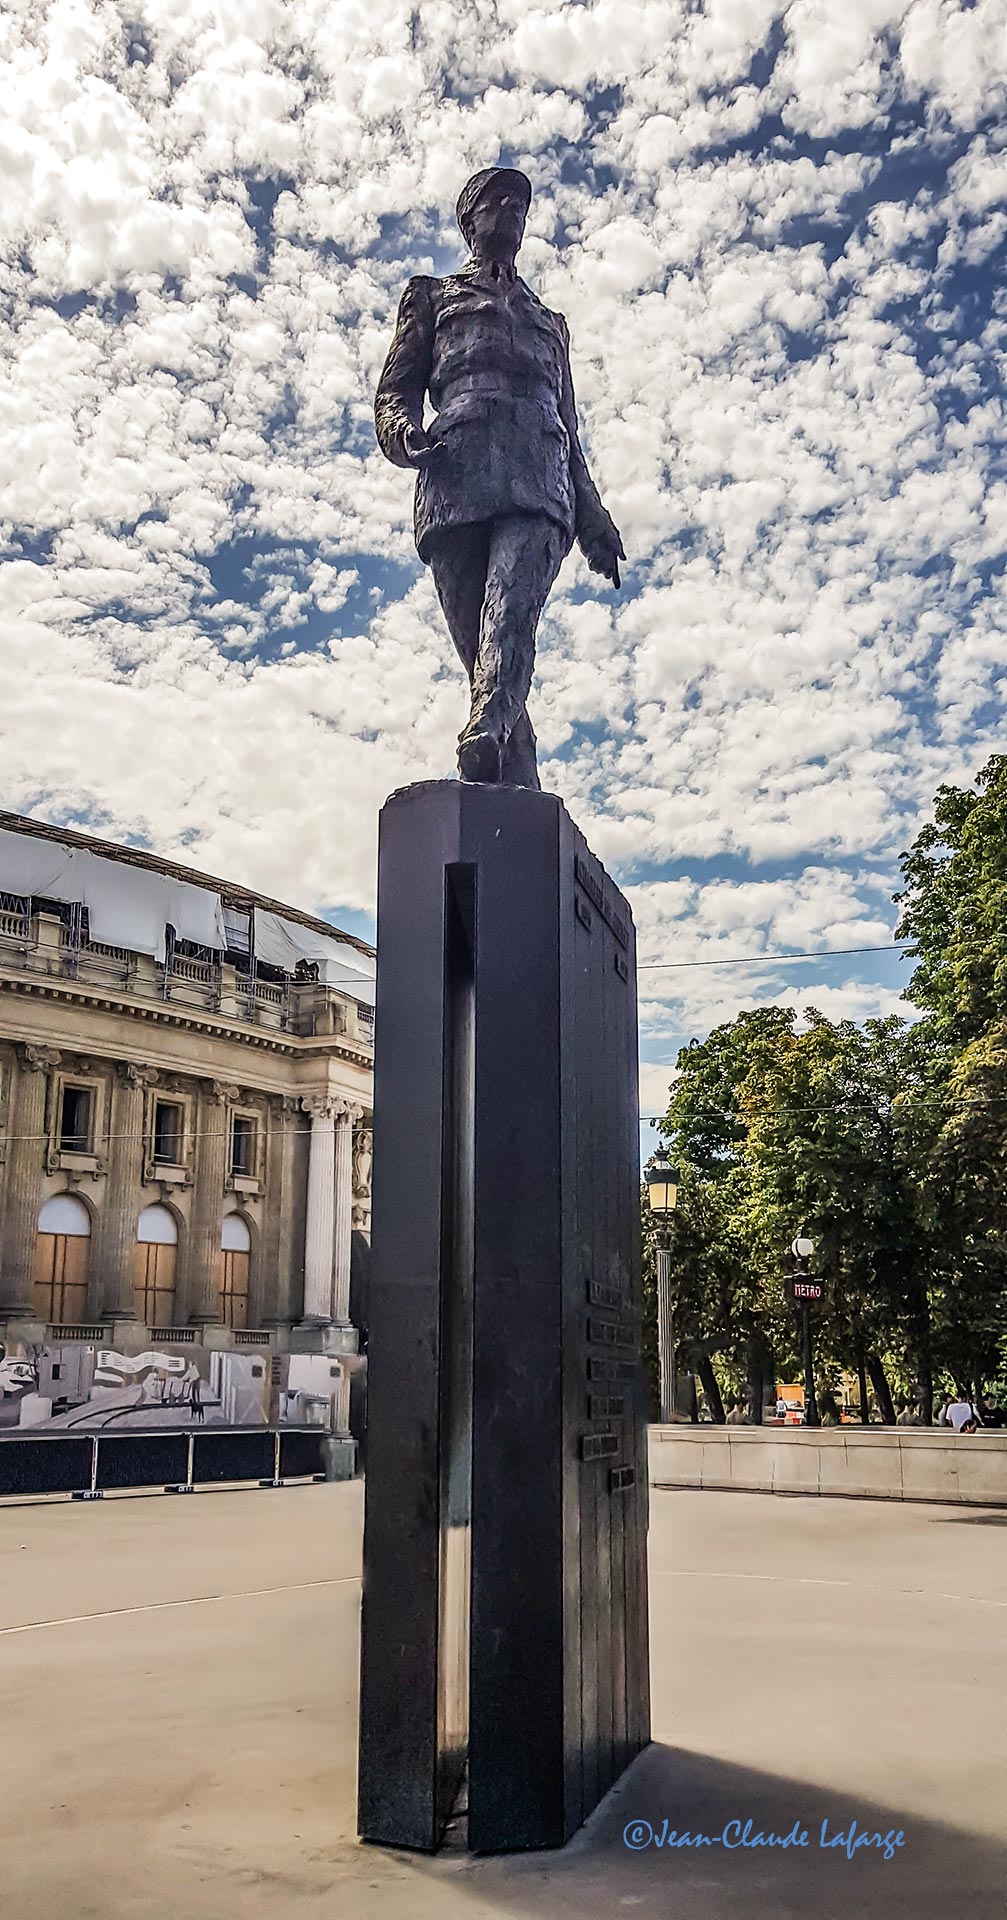 La Statue du Général de Gaulle est située entre le Grand Palais et les Champs Elysées à Paris France.